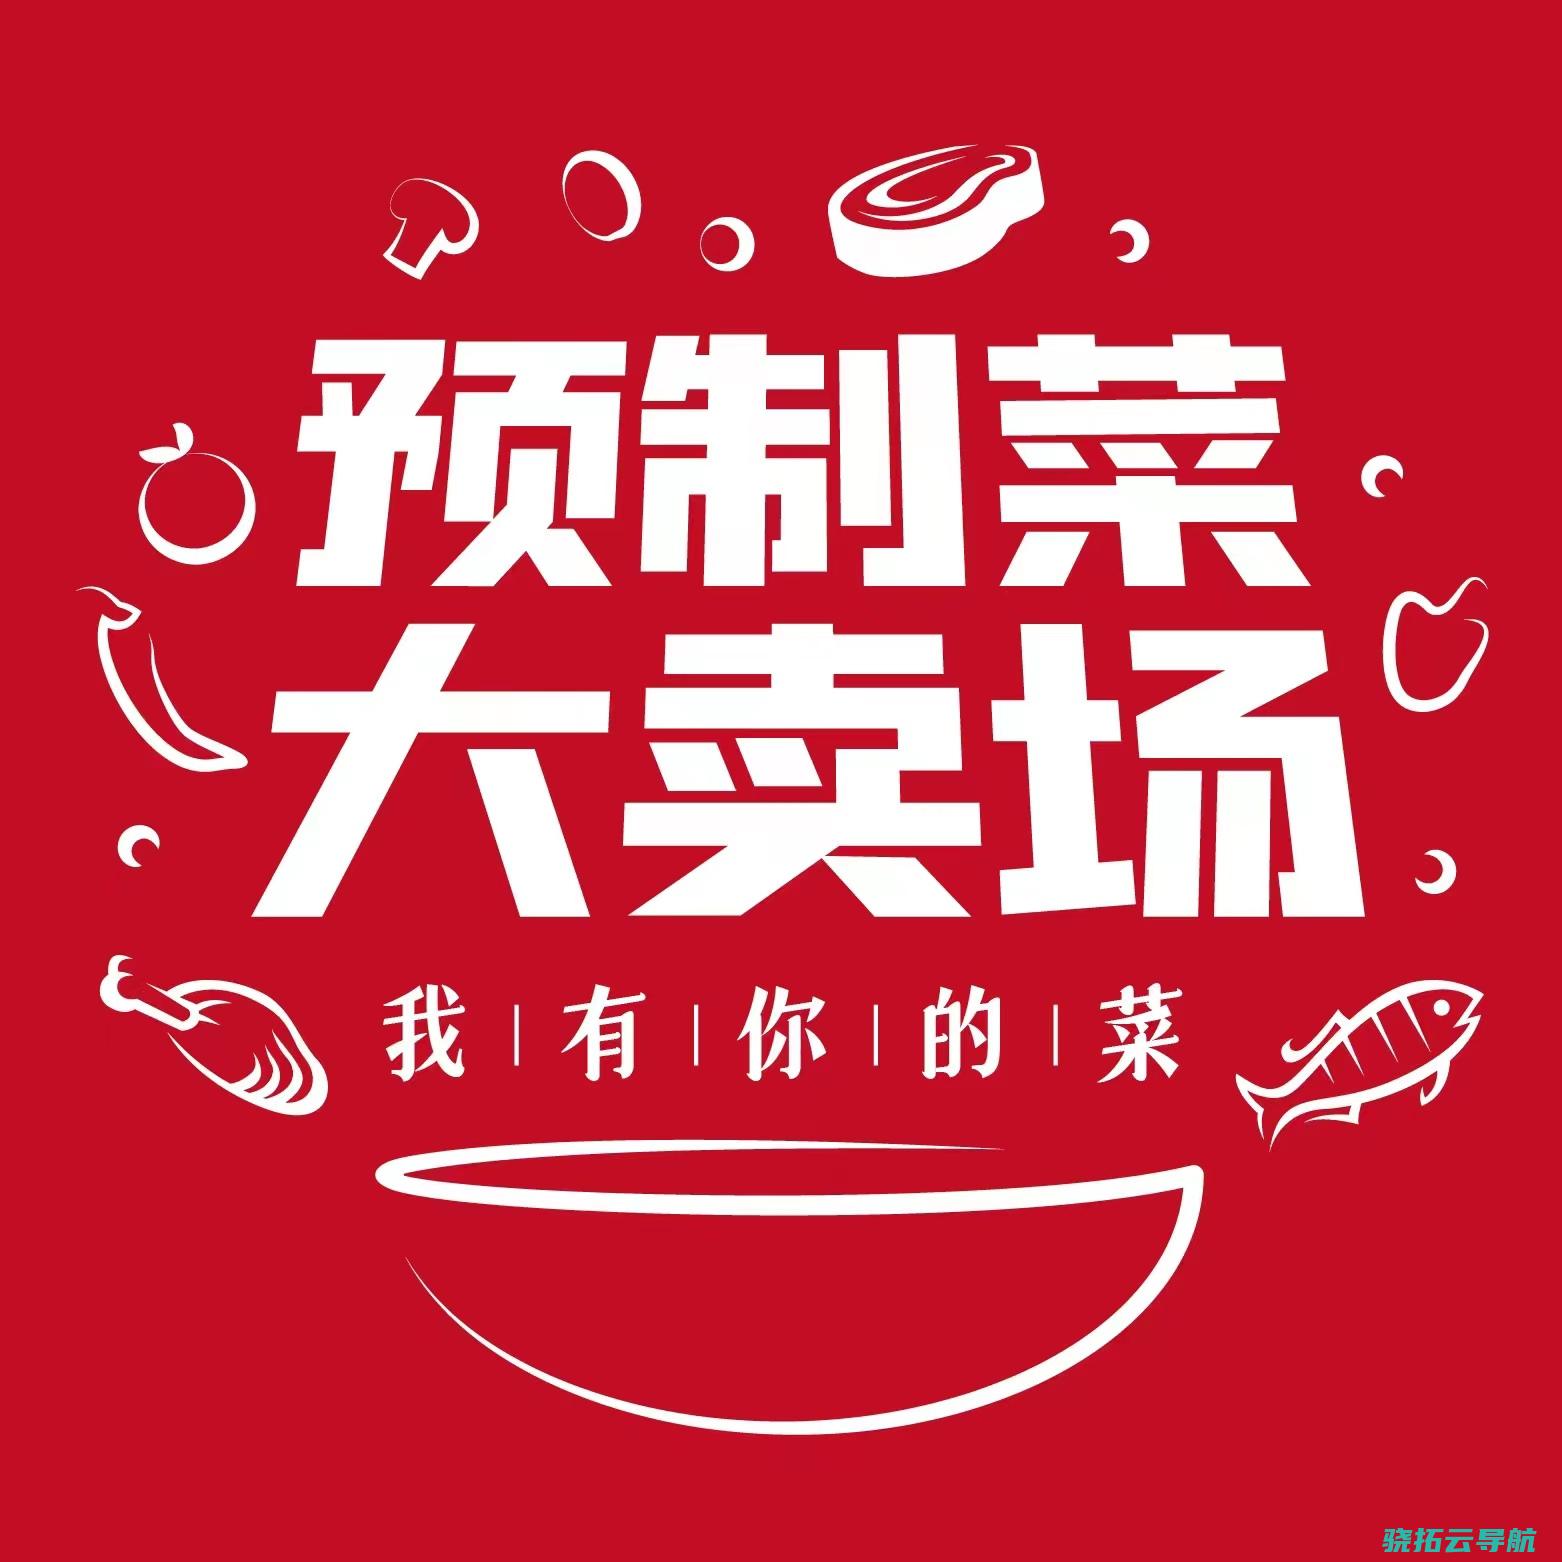 恒健控股公司 粤民投携手组建 全国首个省级预菜产业基金